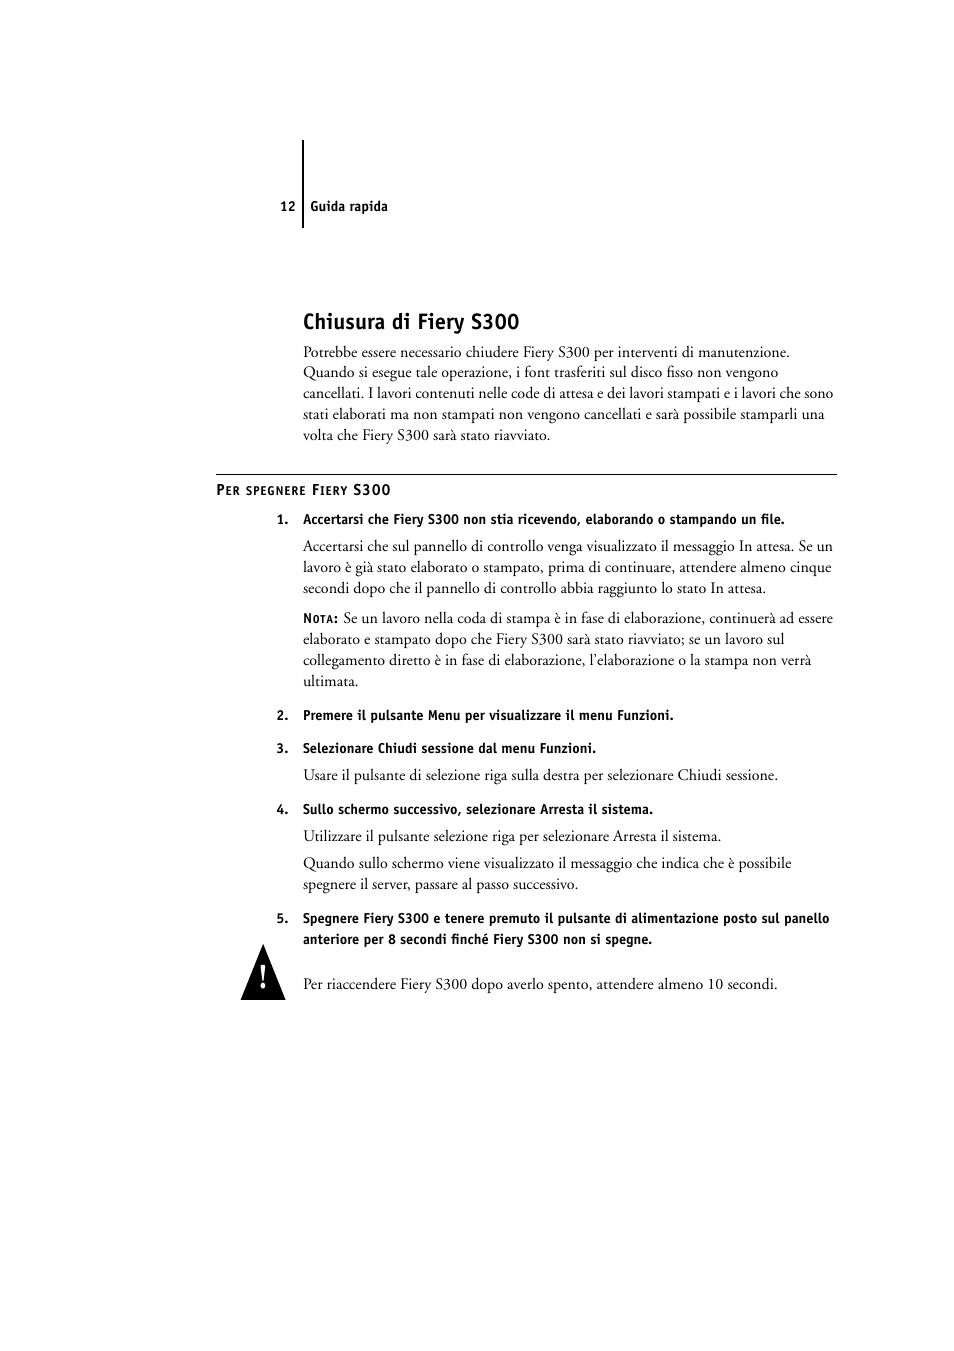 Chiusura di fierys300, Chiusura di fiery s300 | Konica Minolta CN5001Pro Manuale d'uso | Pagina 12 / 16